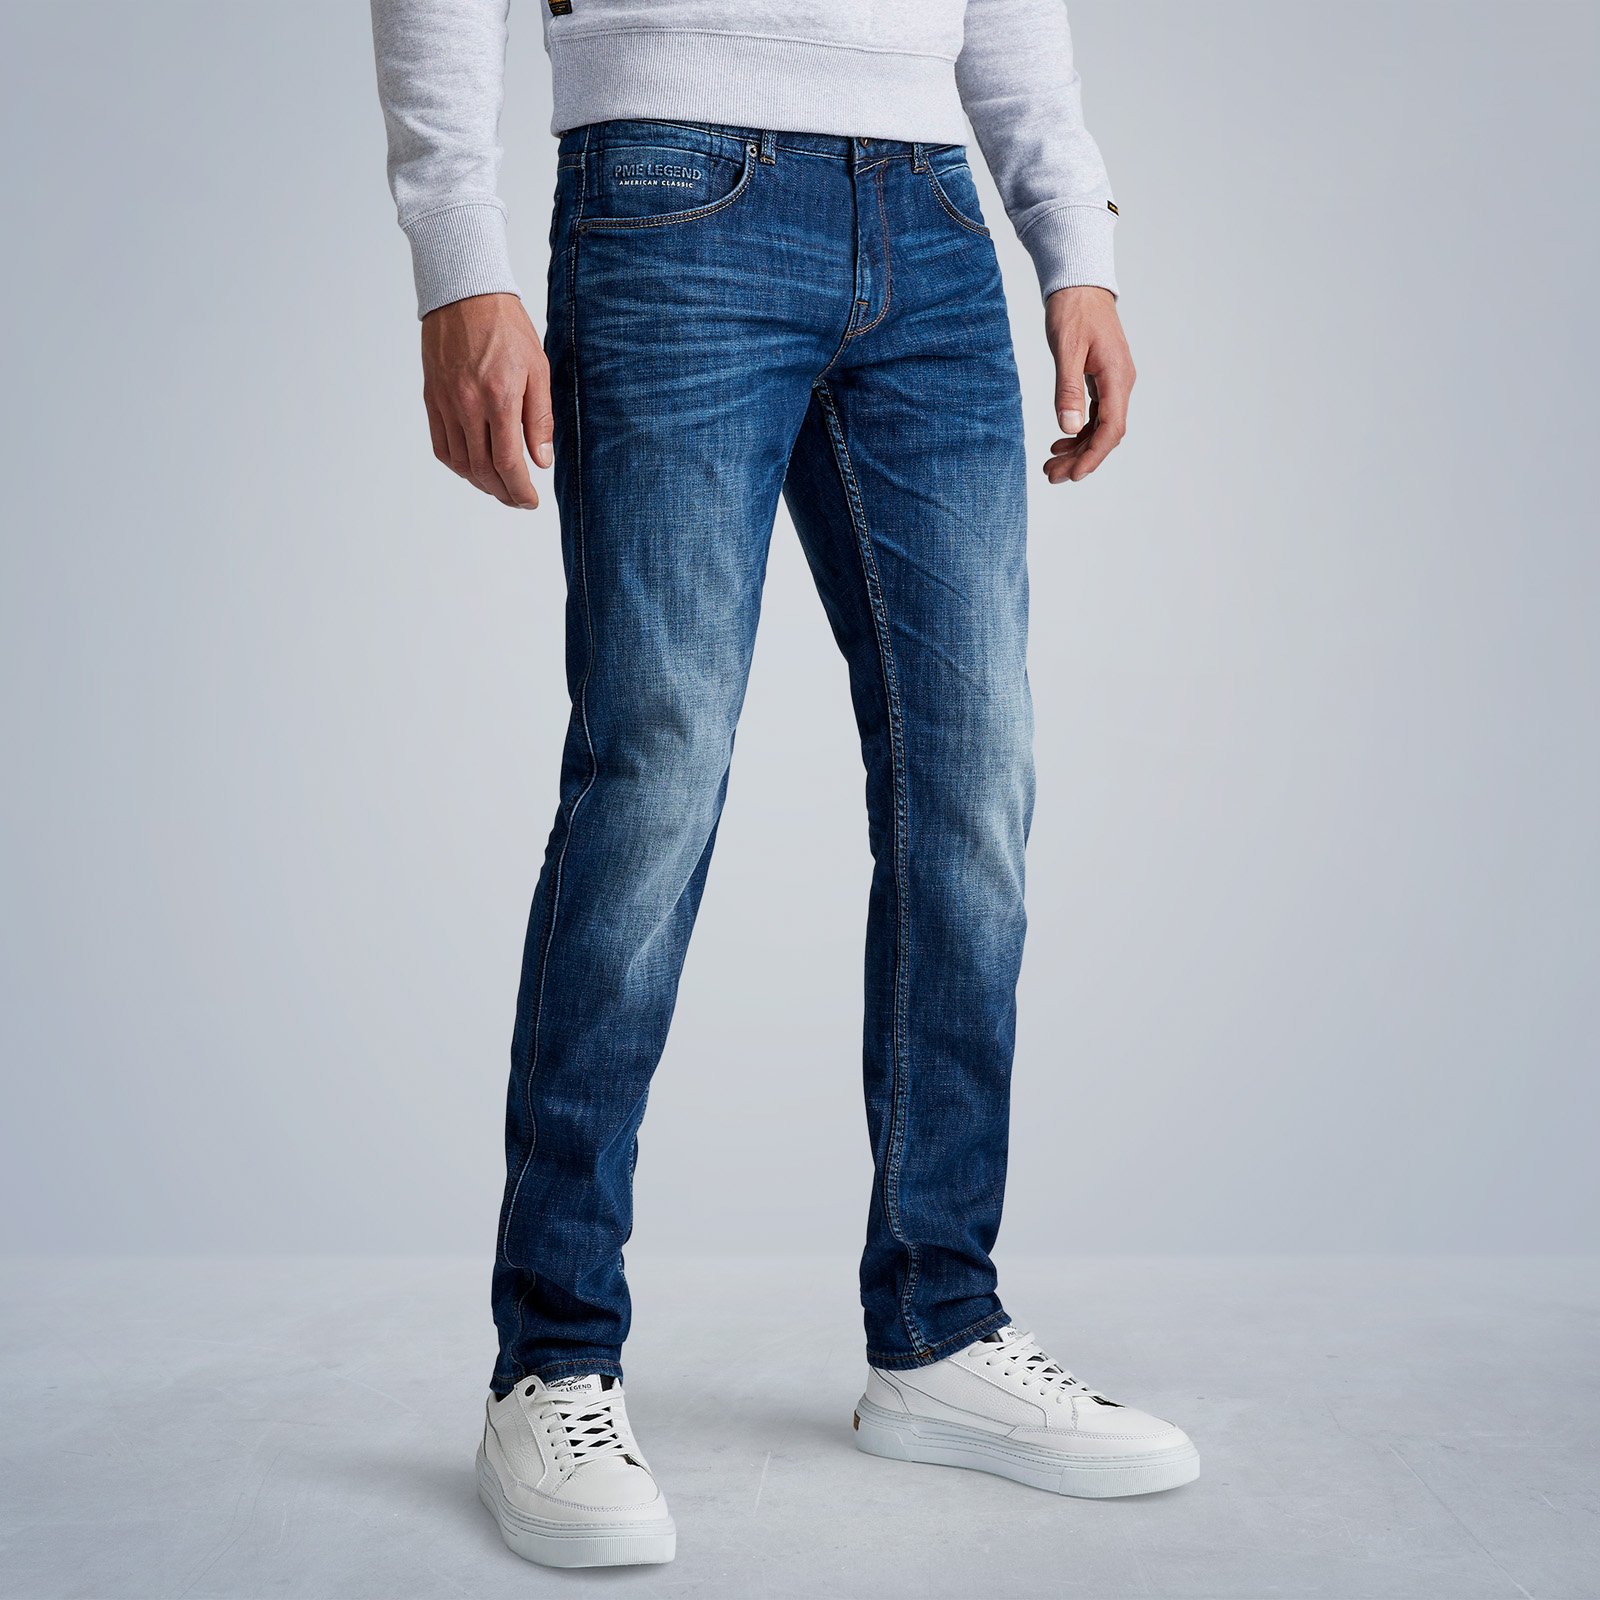 PME Legend Nightflight jeans | Gratis verzending en retourneren